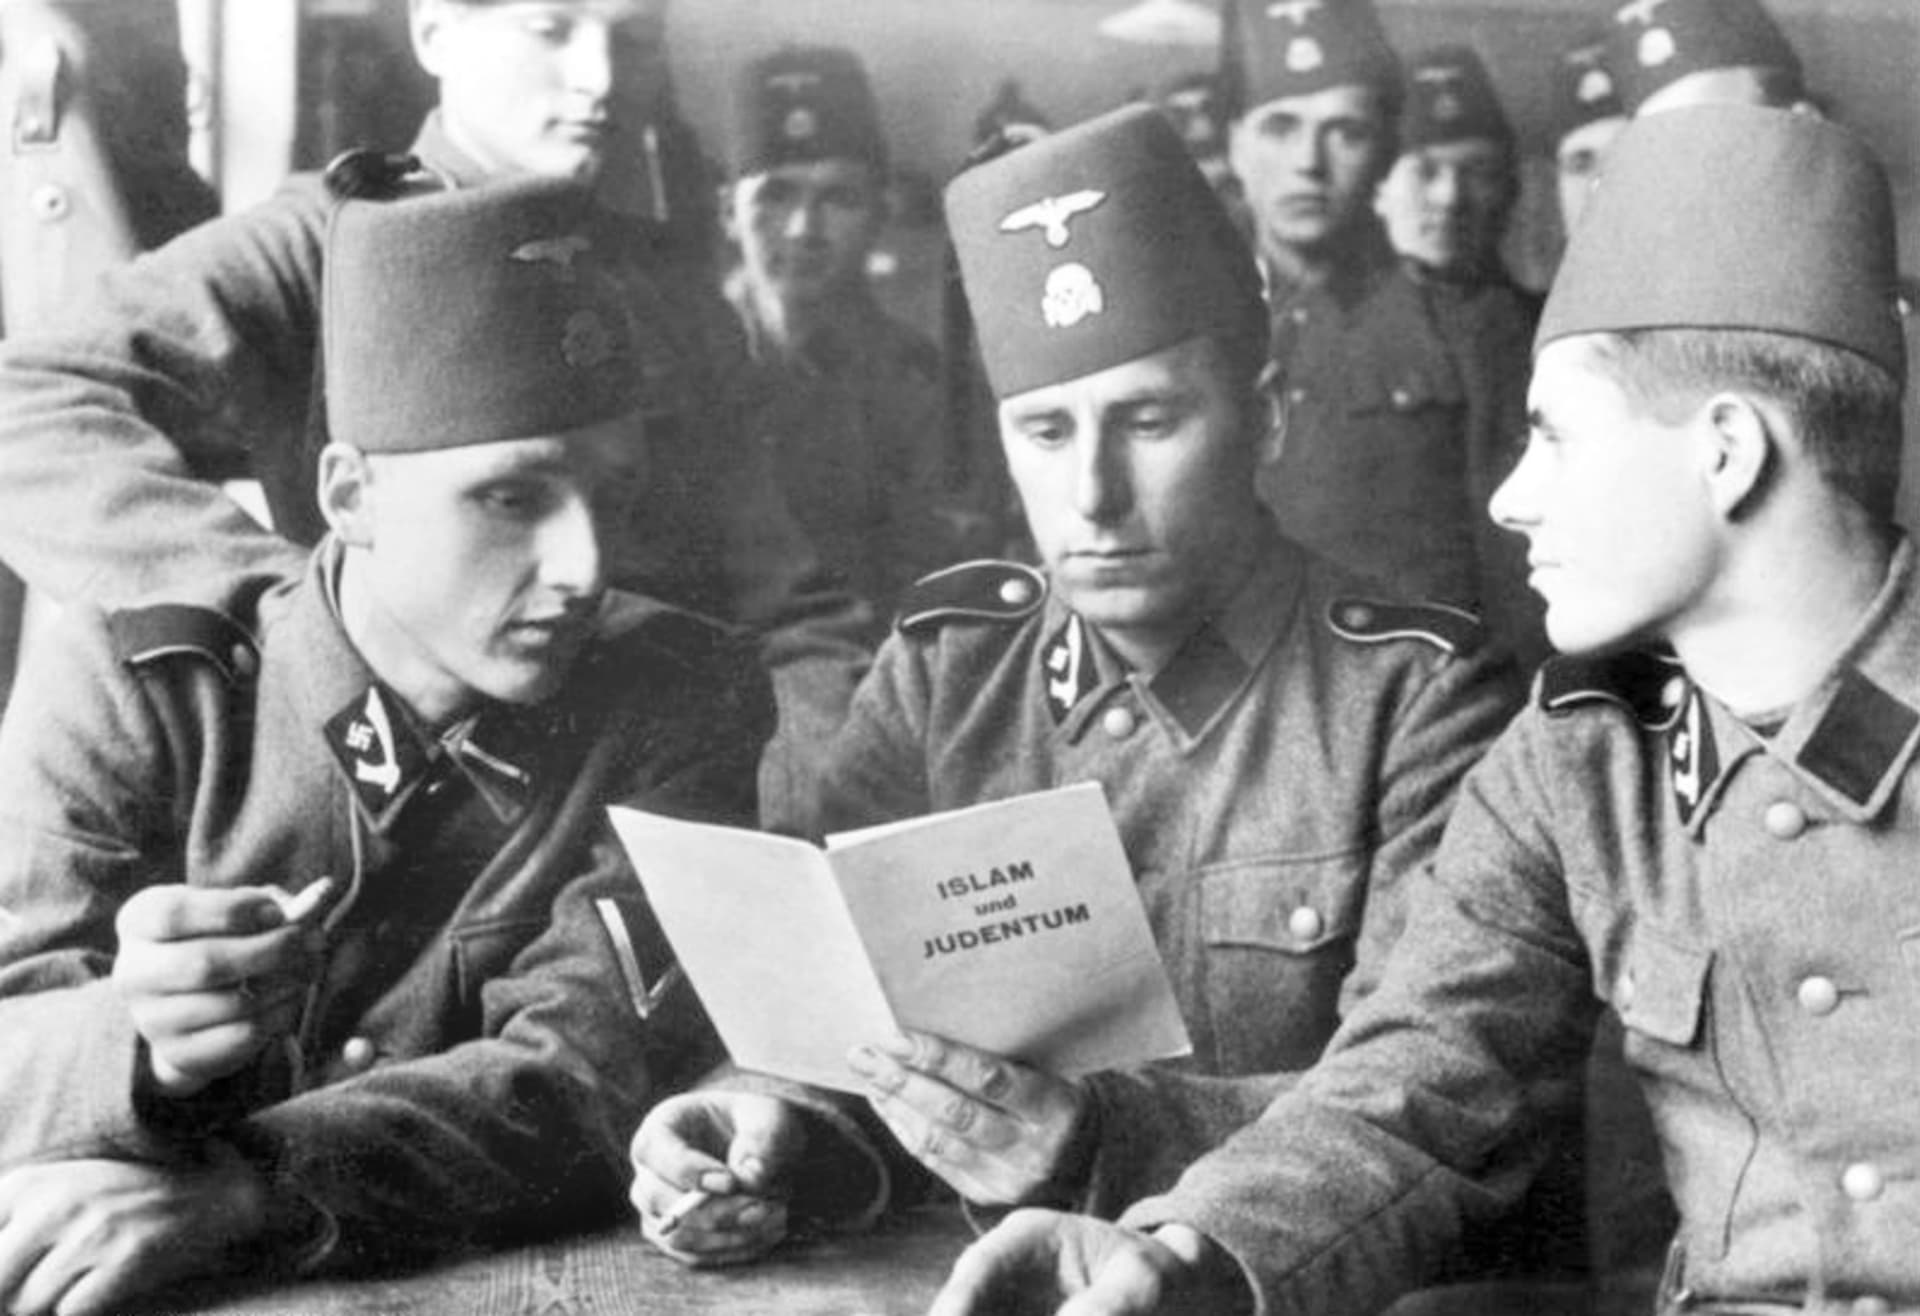 Příslušníci muslimské 13. horské divize Zbraní SS Handschar, při studiu propagačního spisku Islám a židovství, rok 1944